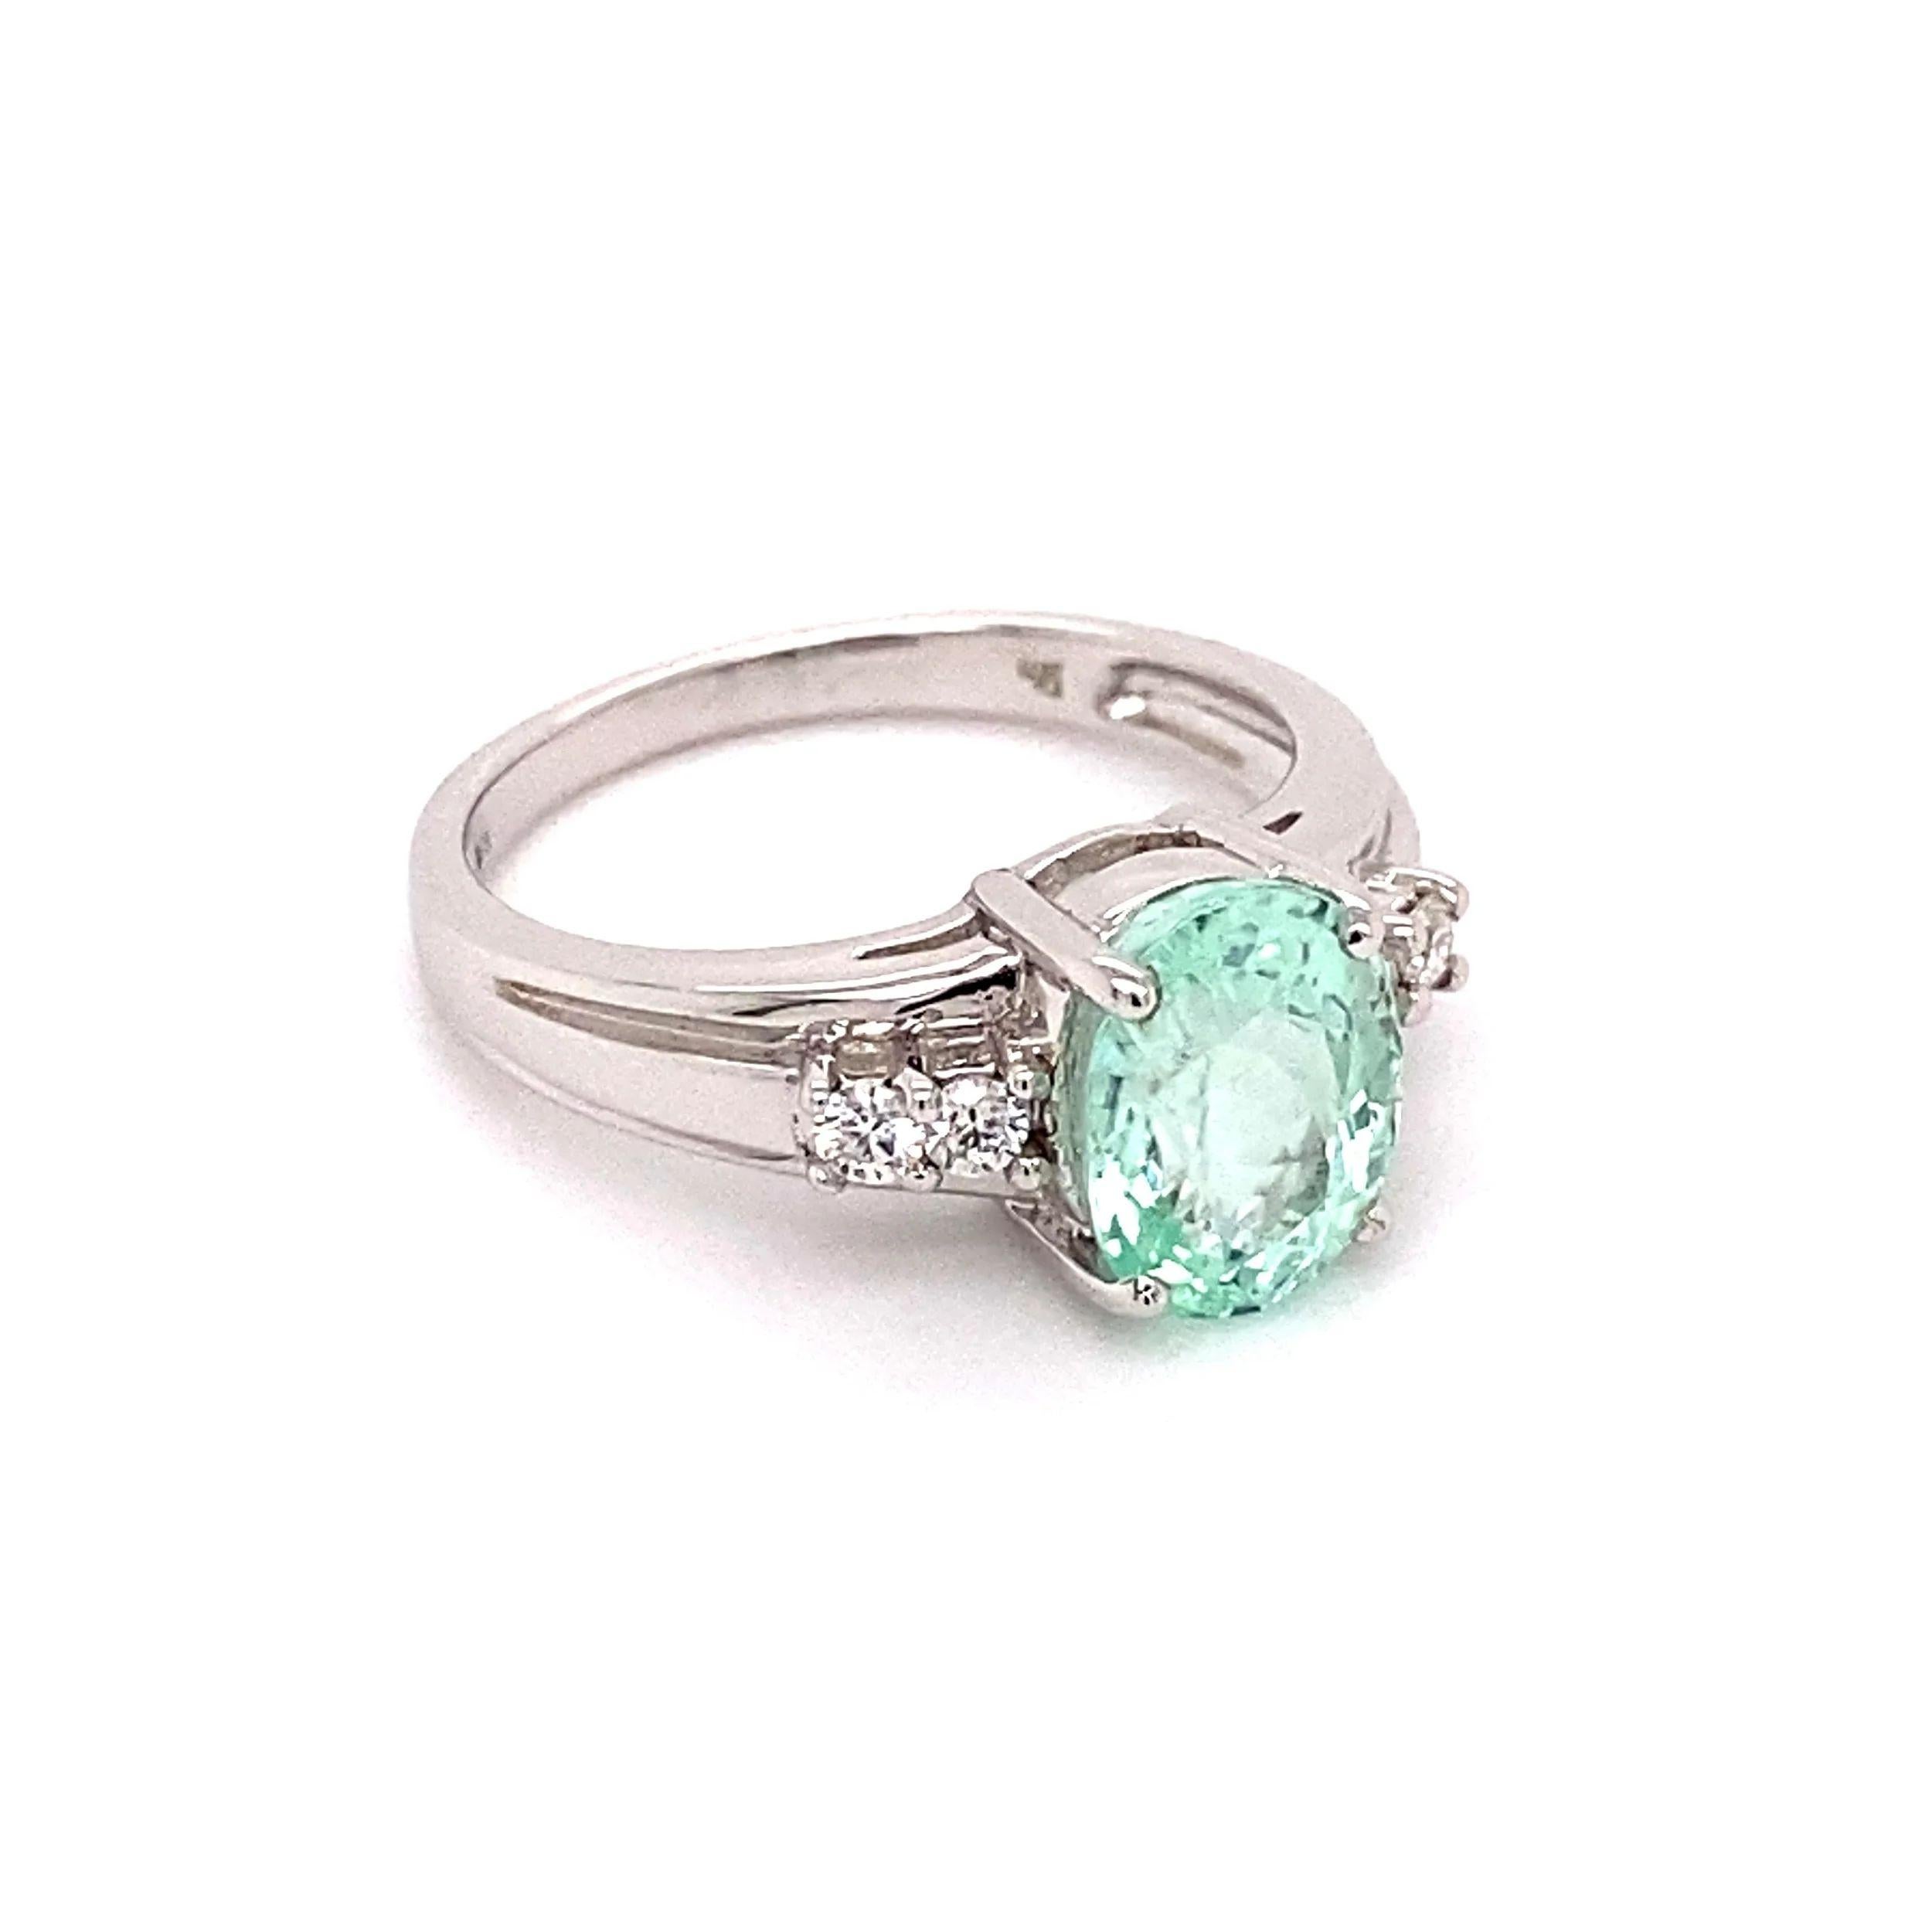 Einfach schön! Fein detaillierte GIA Oval bläulich grünen Paraiba Turmalin und Diamant Gold Ring. Beide Seiten mit Diamanten besetzt, ca. 0,18 Karat Gesamtgewicht. Abmessungen: 1,00